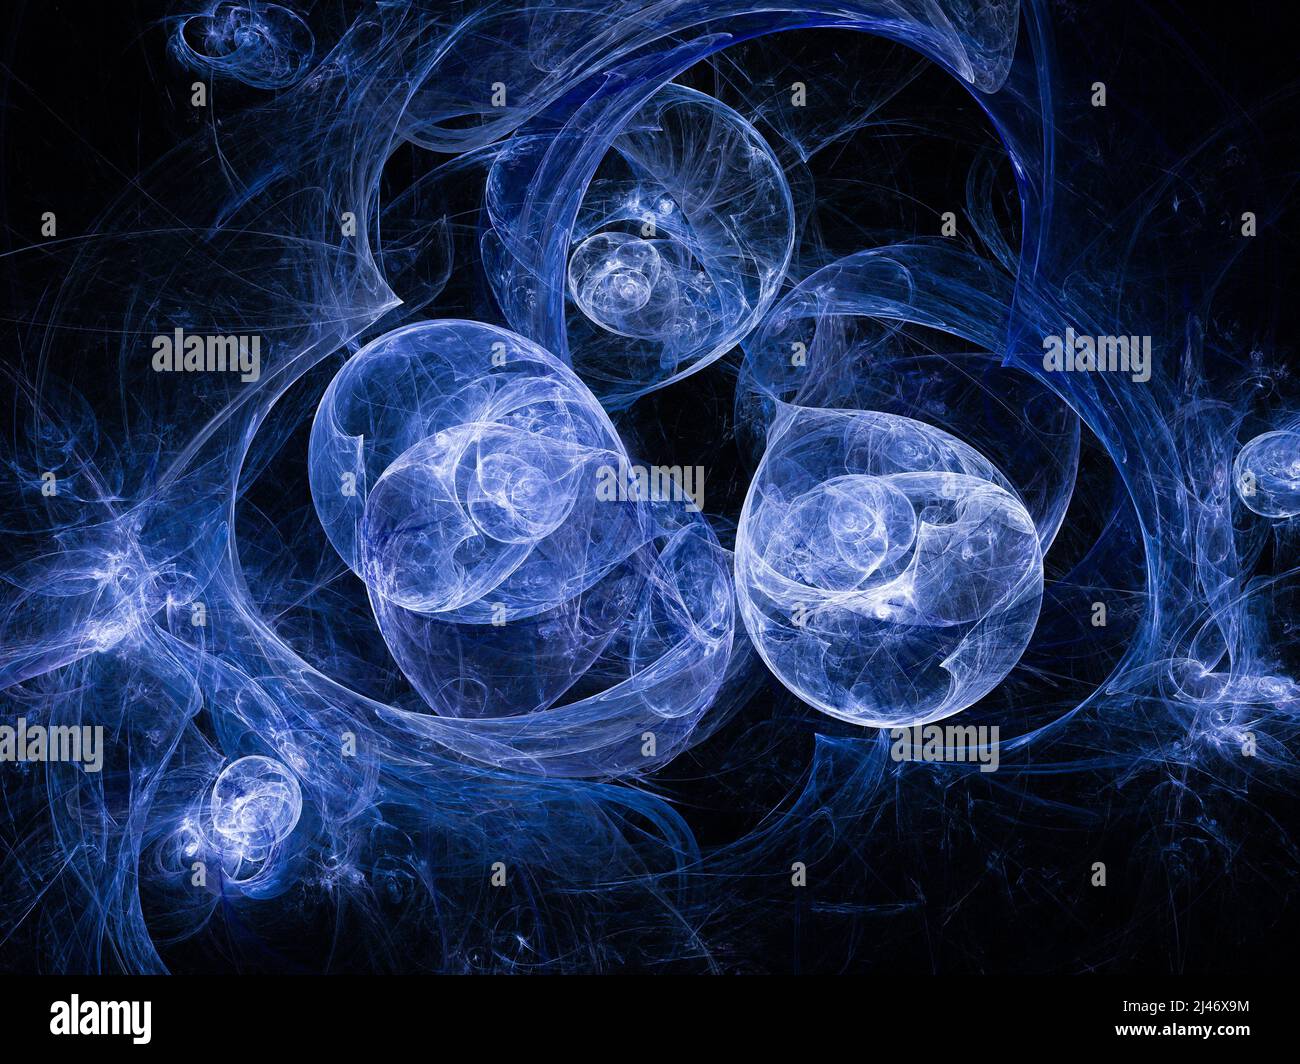 Arrière-plan abstrait de l'art fractal, évocateur de l'astronomie et de la nébuleuse. Illustration fractale générée par ordinateur, bulles bleues Banque D'Images